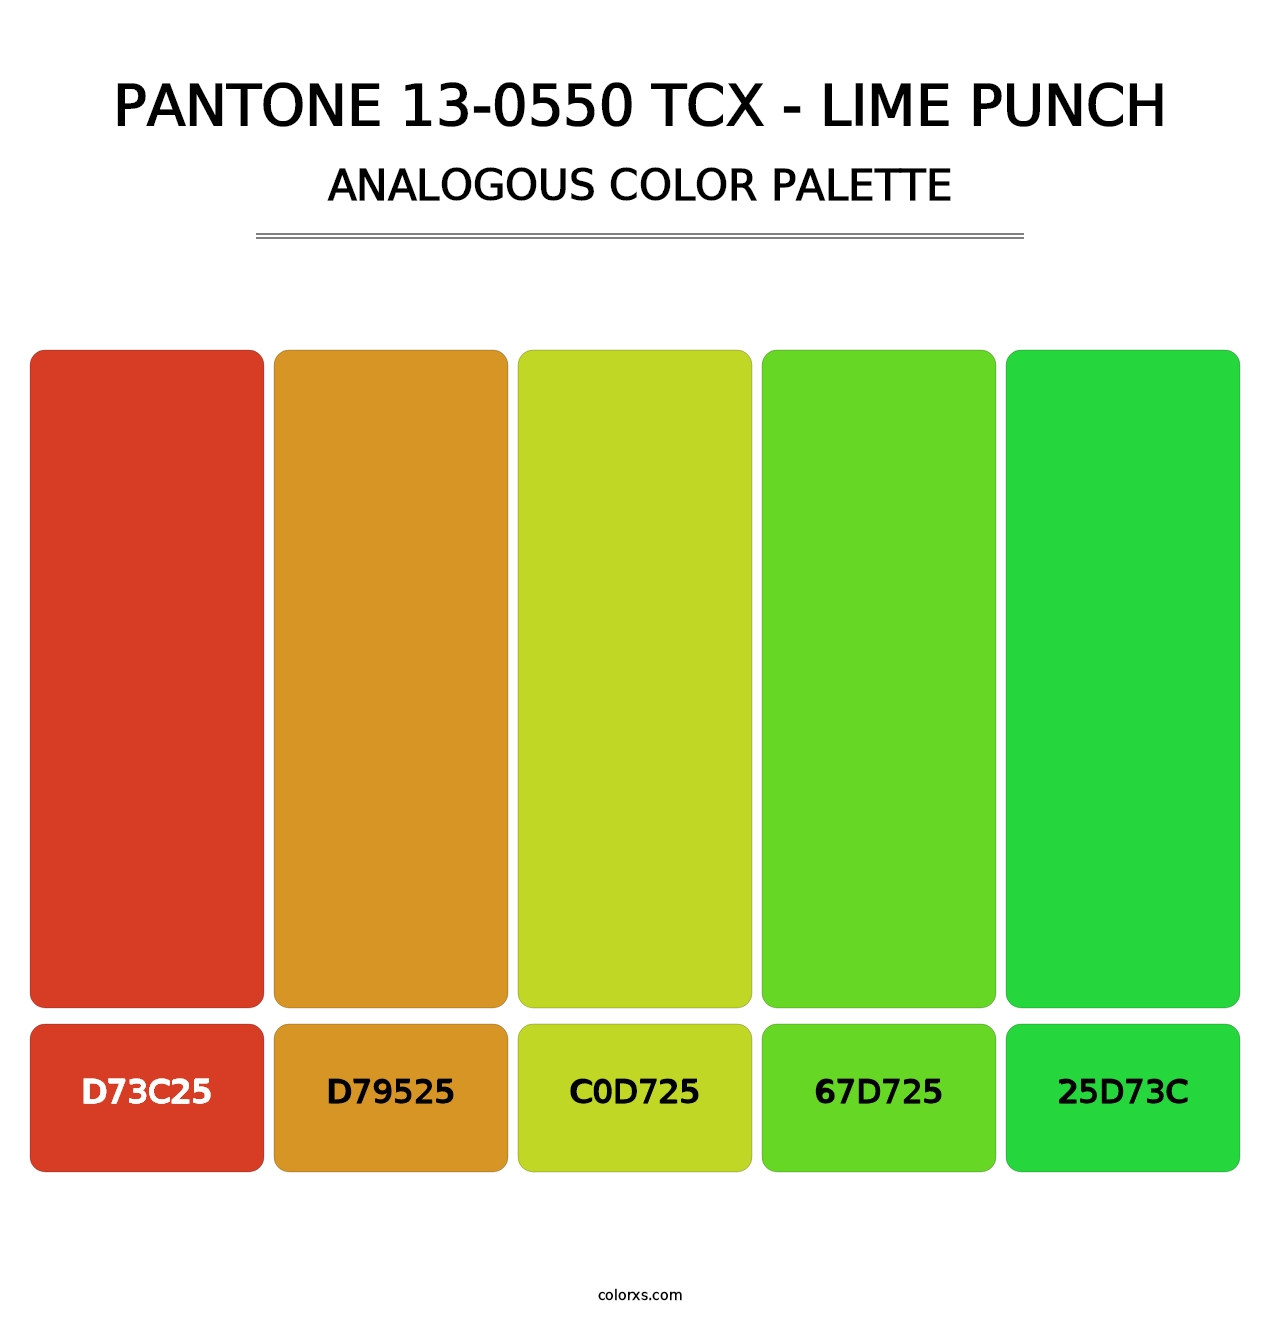 PANTONE 13-0550 TCX - Lime Punch - Analogous Color Palette